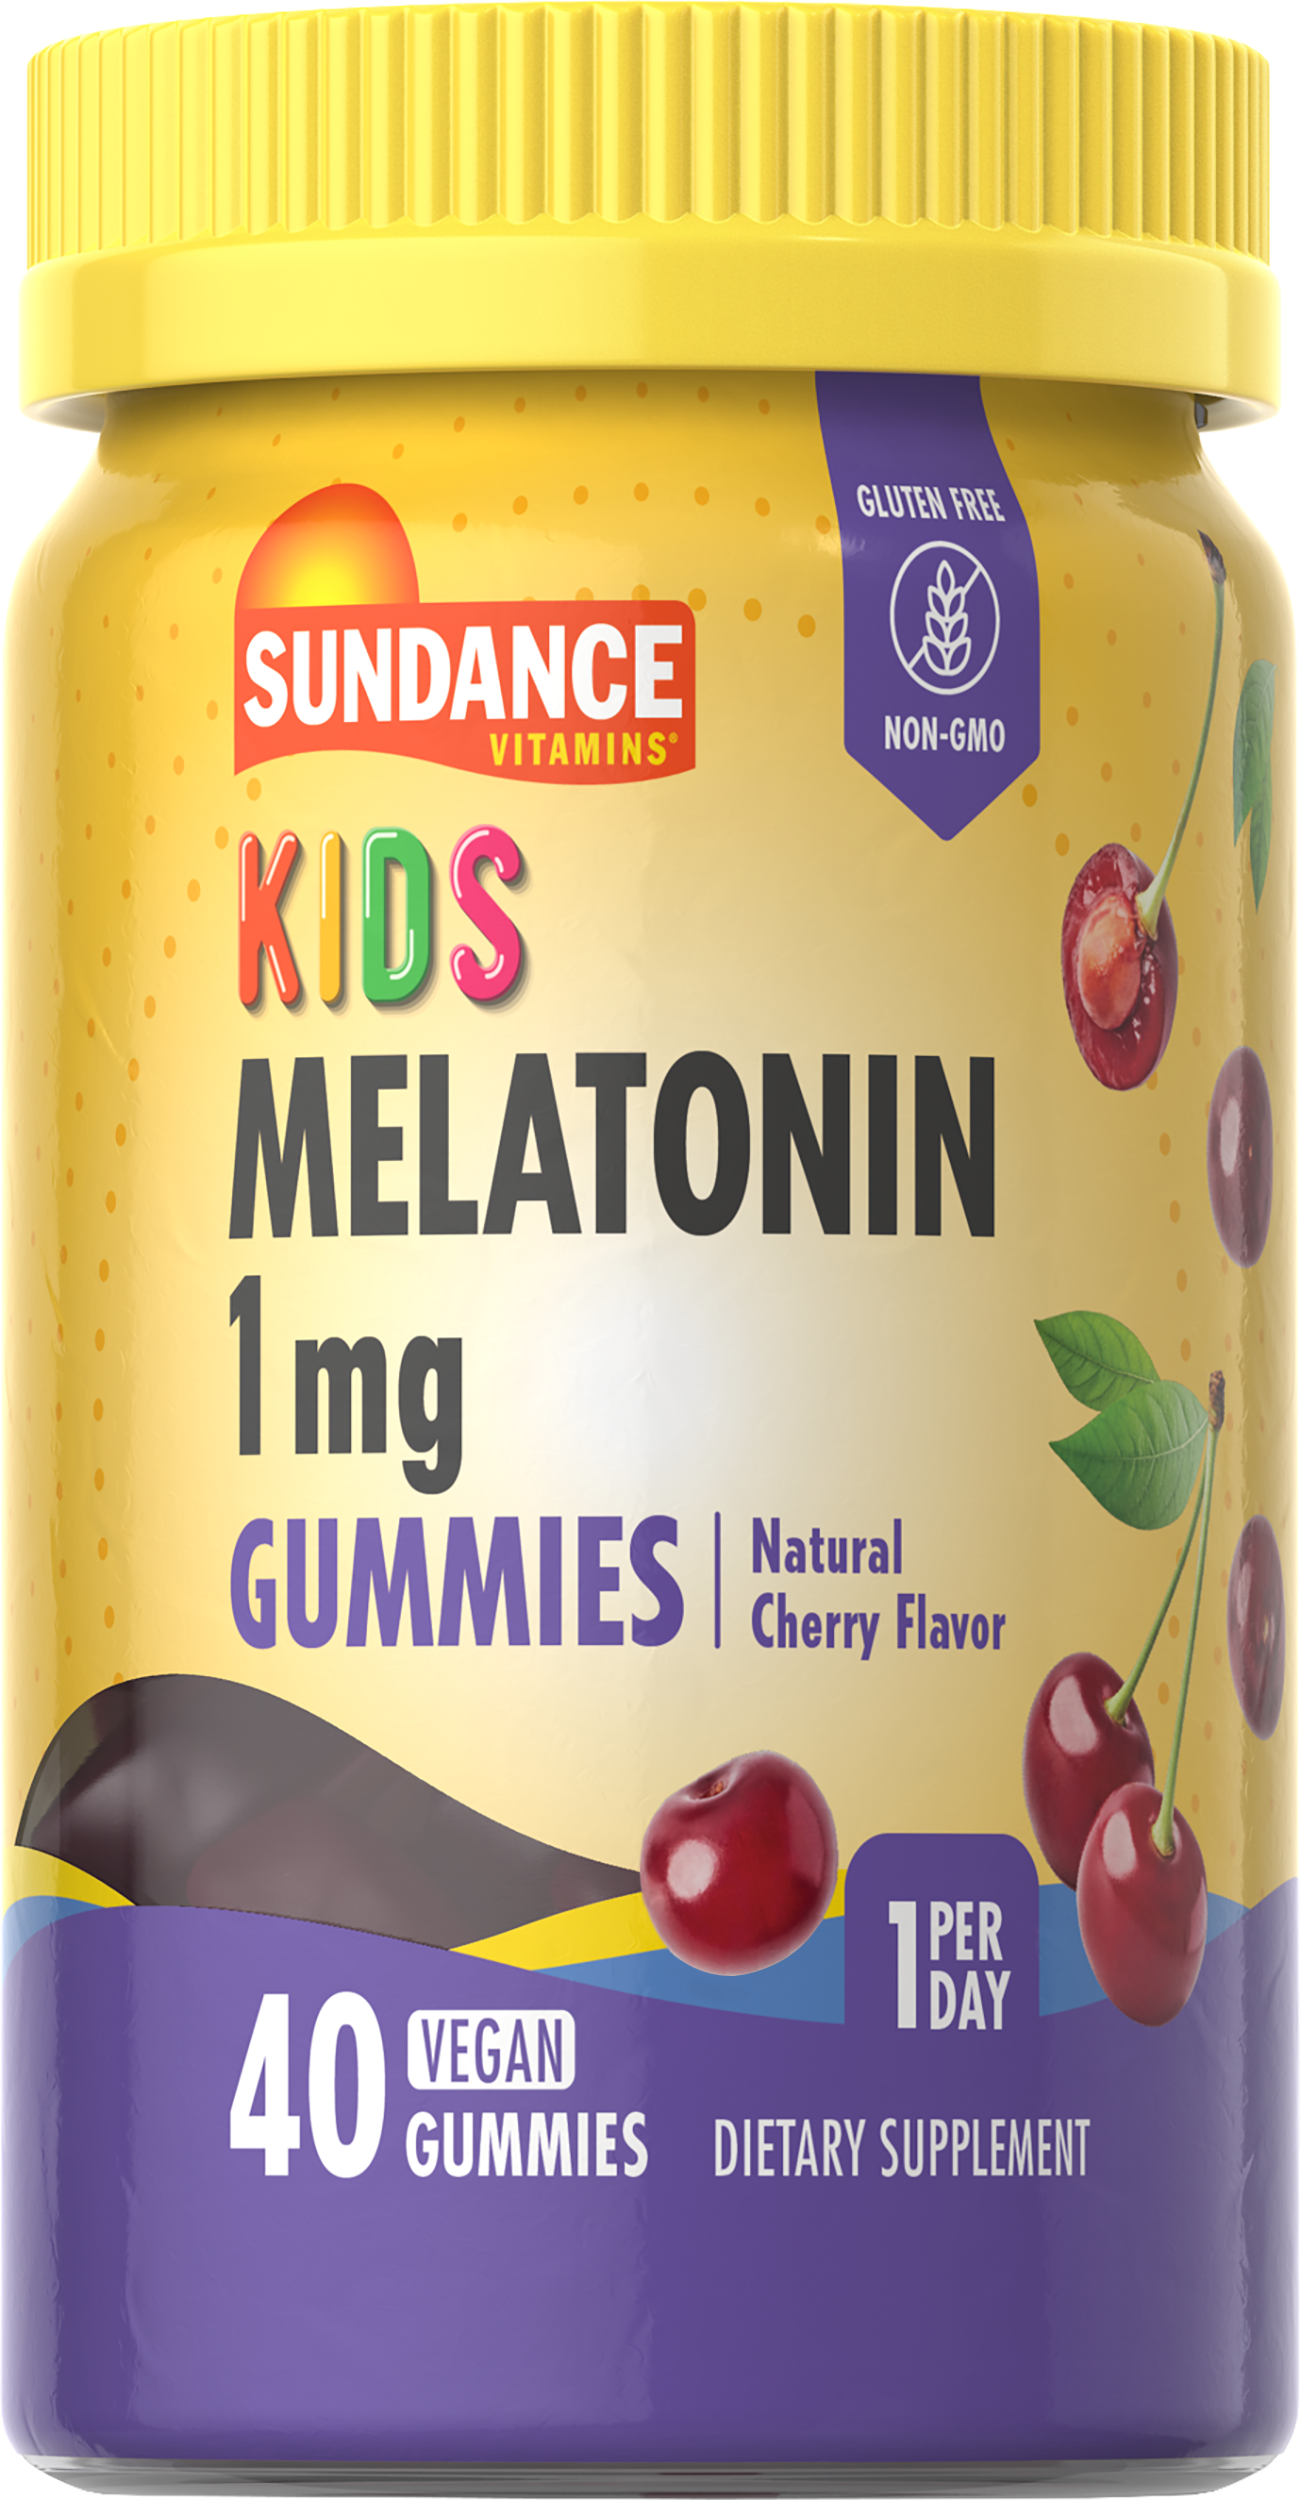 Melatonin for Kids 1mg